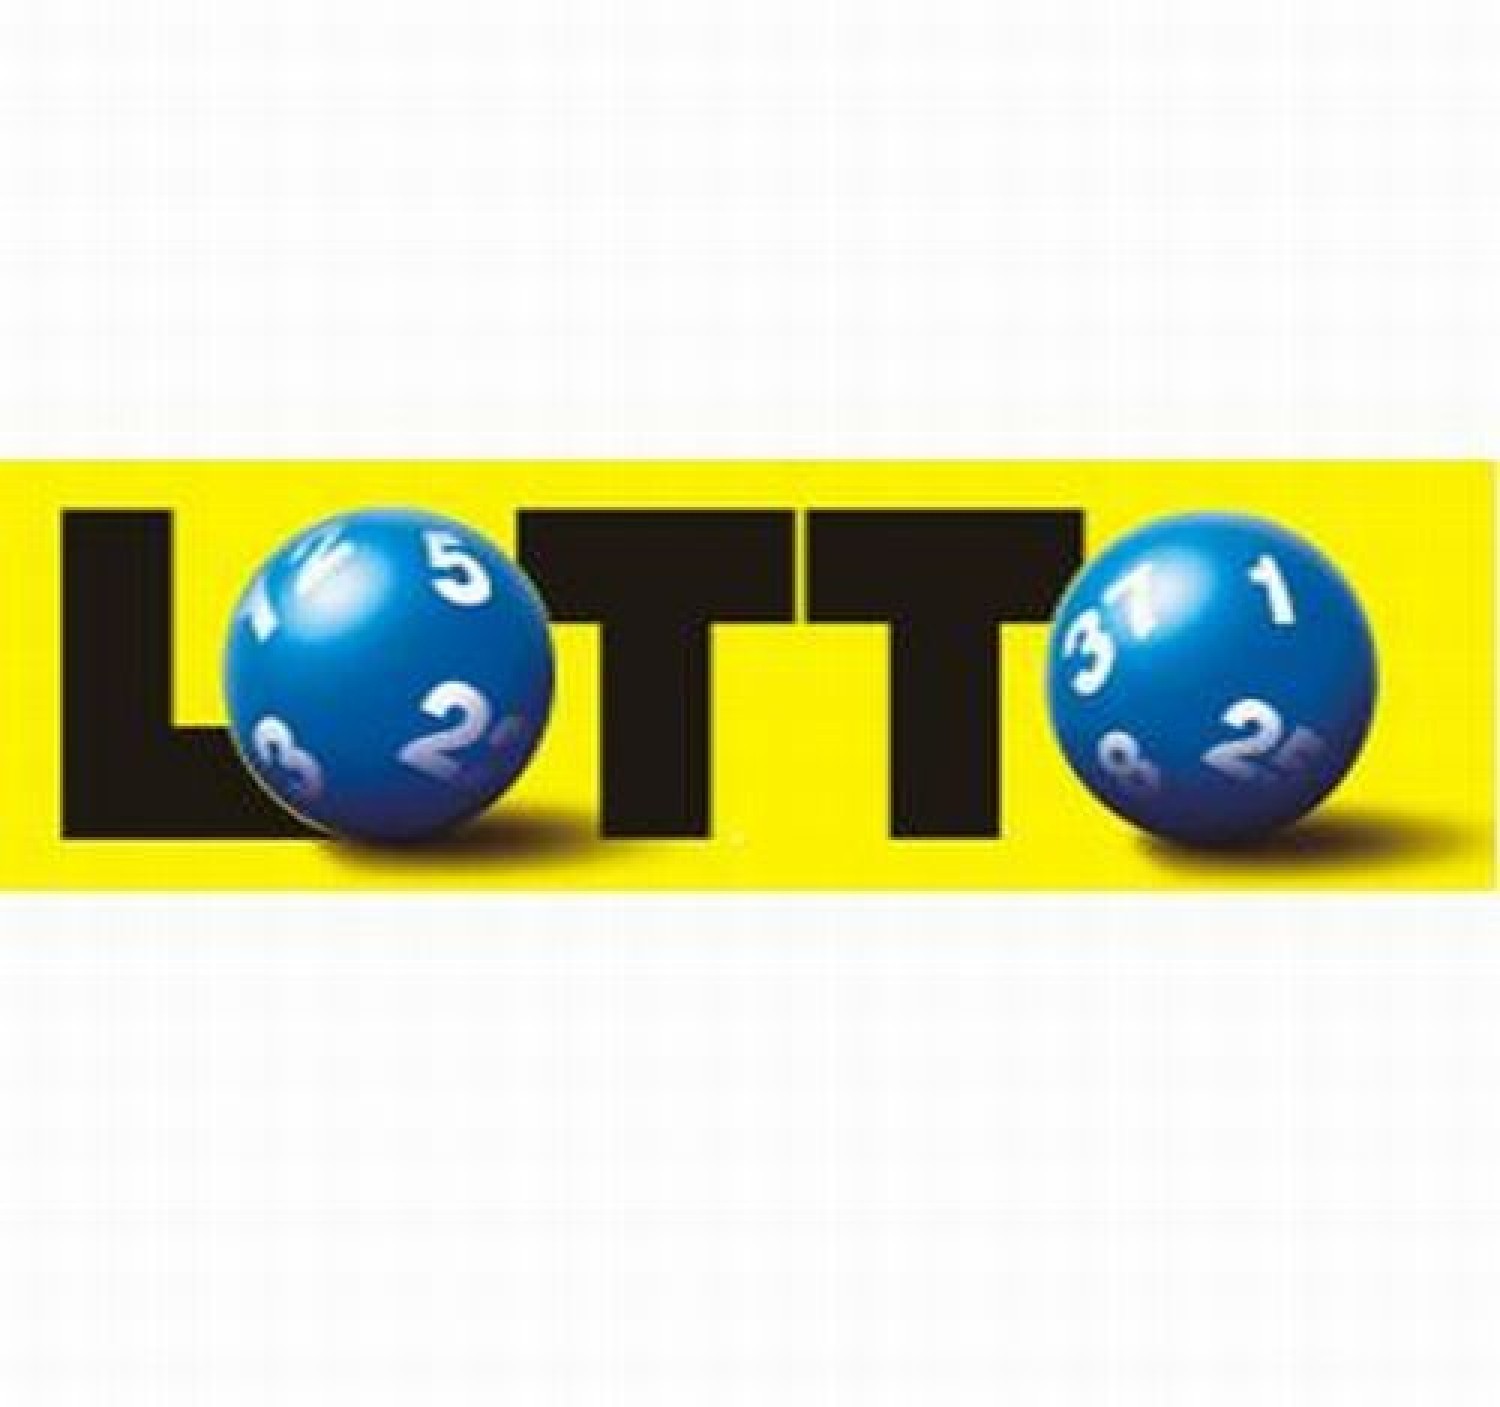 Lotto.De Wyniki